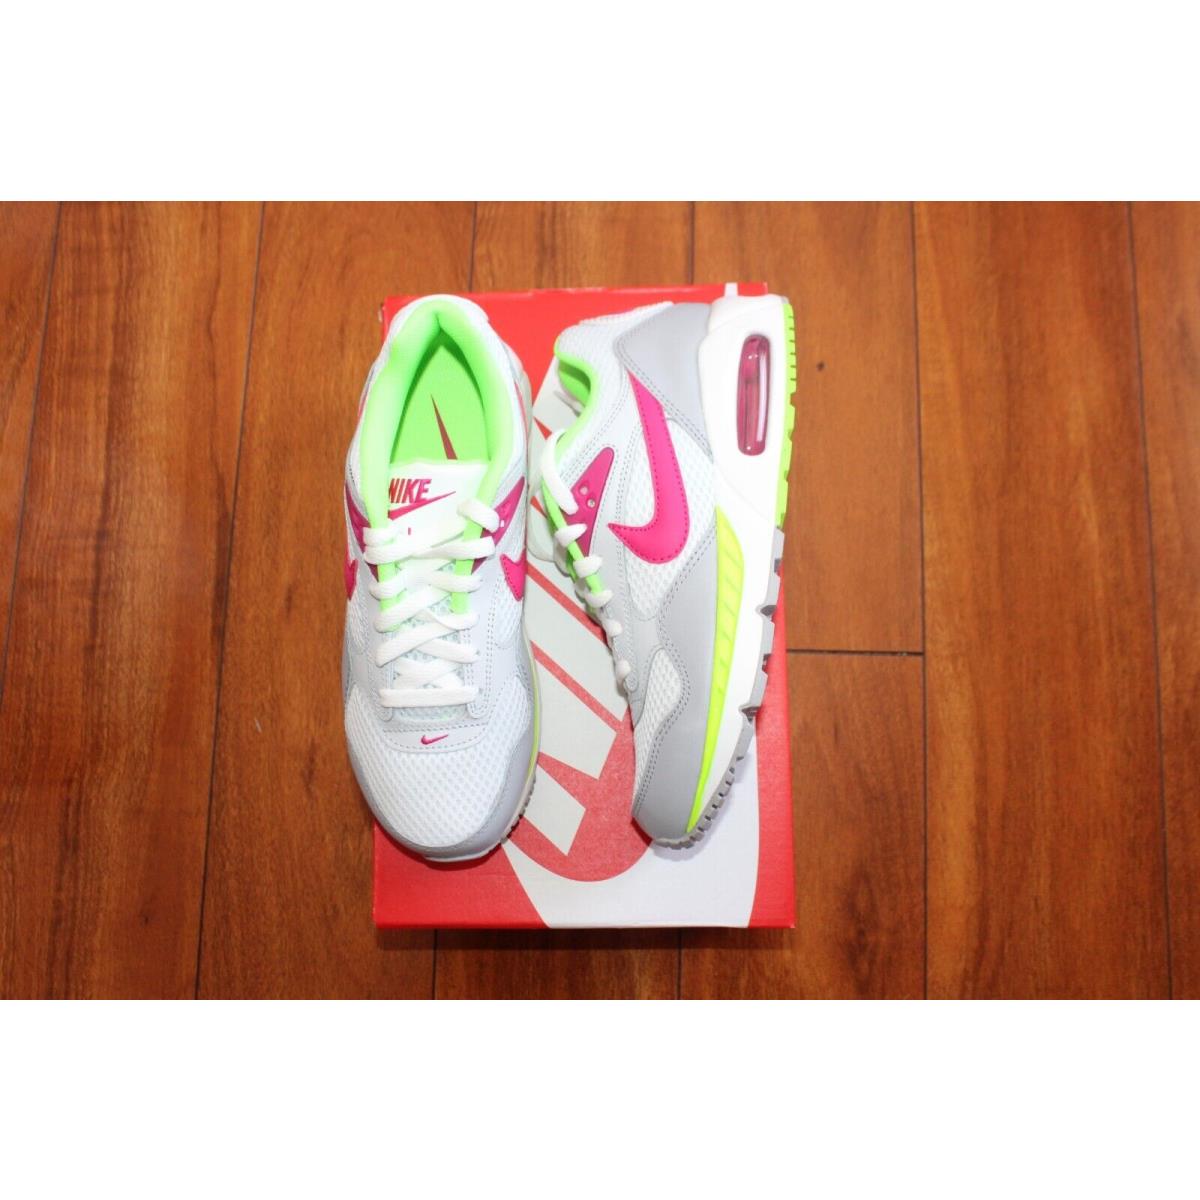 Womens Nike SZ 7.5 Shoes Air Max